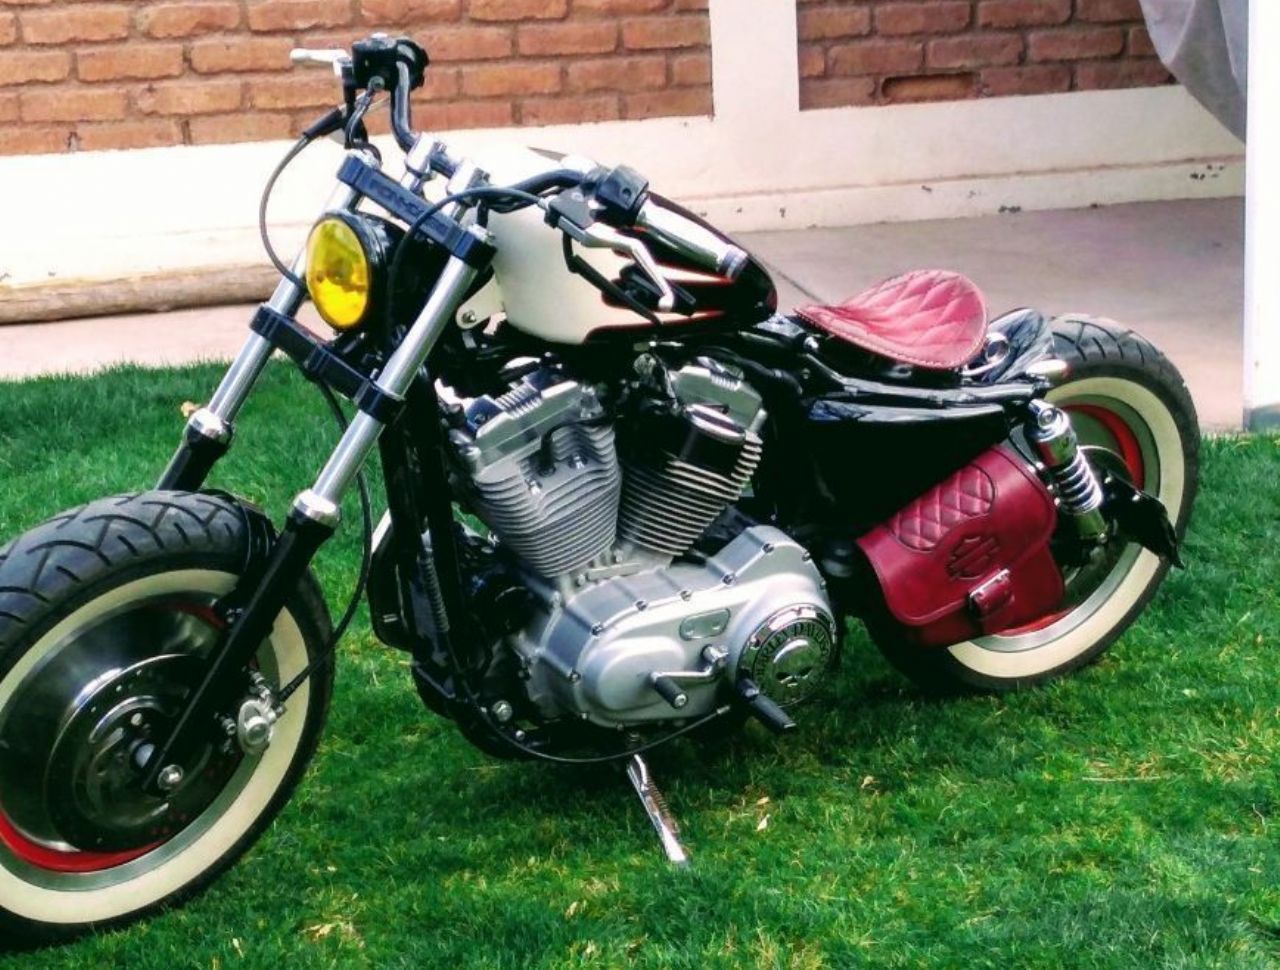 Harley Davidson 883 Usada en Mendoza, deRuedas